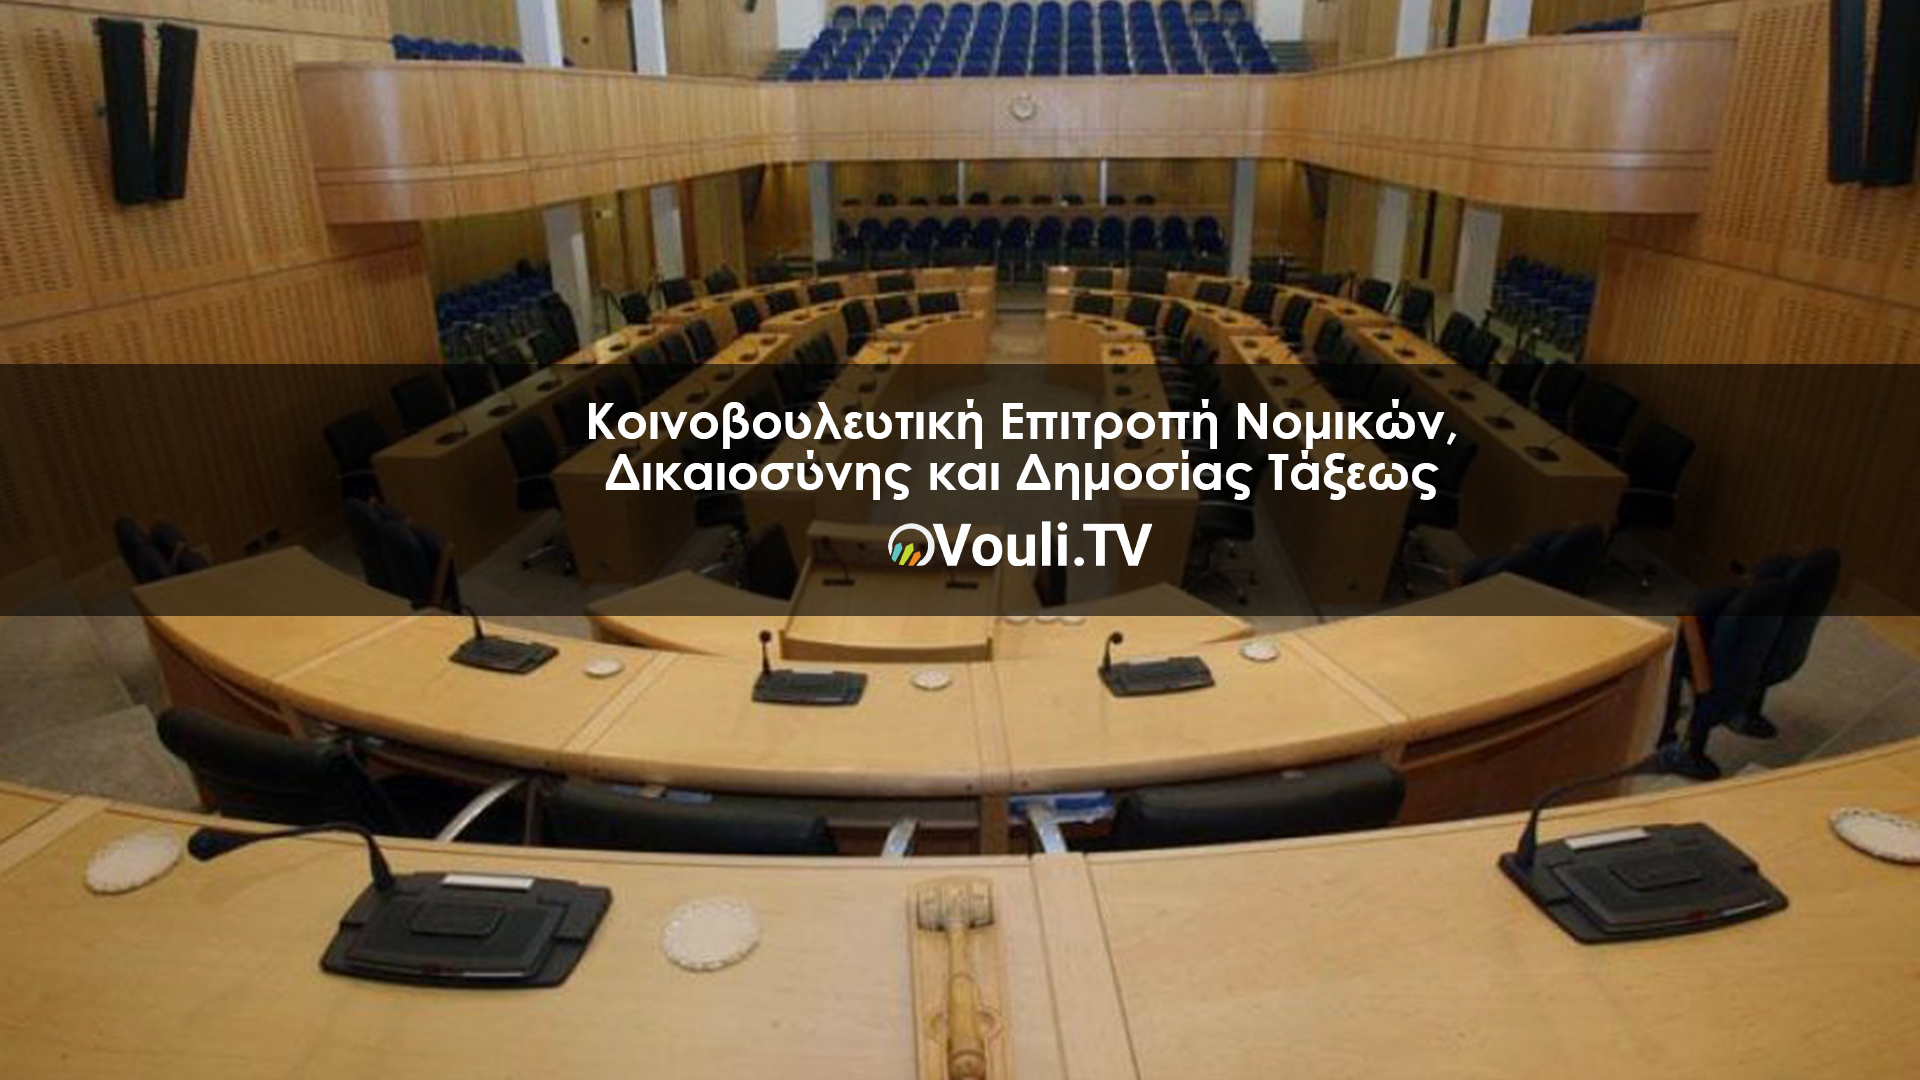 Κοινοβουλευτική Επιτροπή Νομικών, Δικαιοσύνης και Δημοσίας Τάξεως | Vouli report 23/03/2022